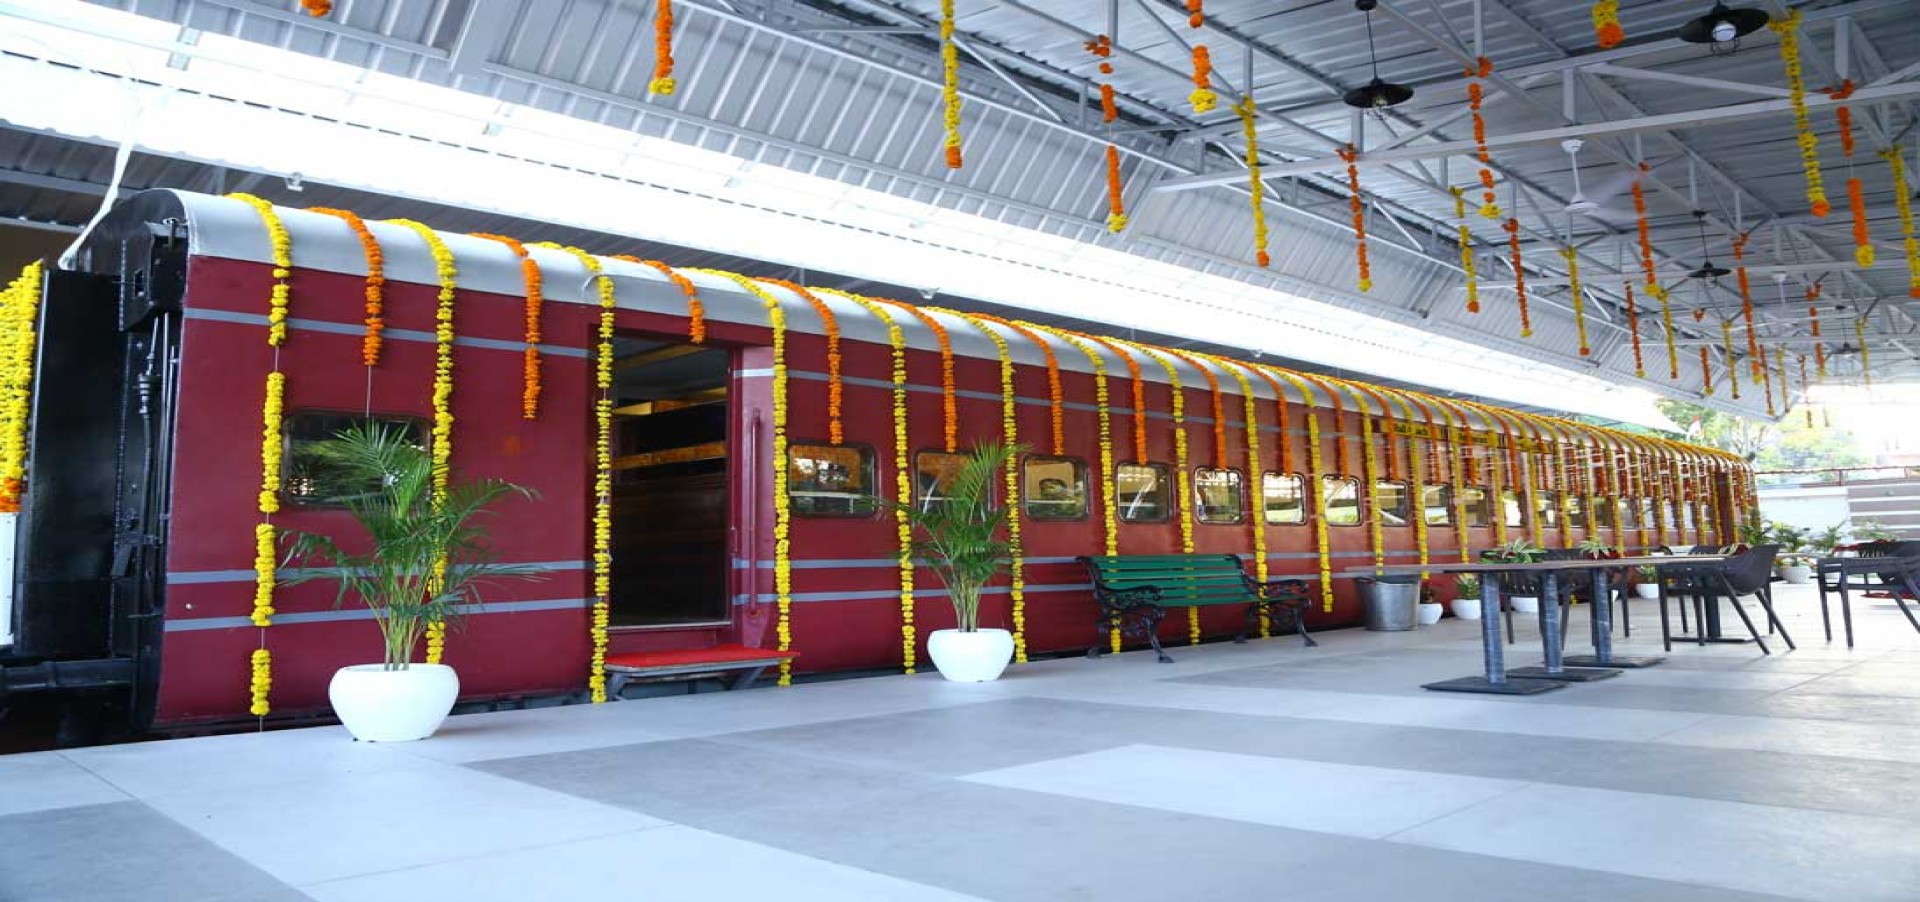 Rail Coach Restaurant